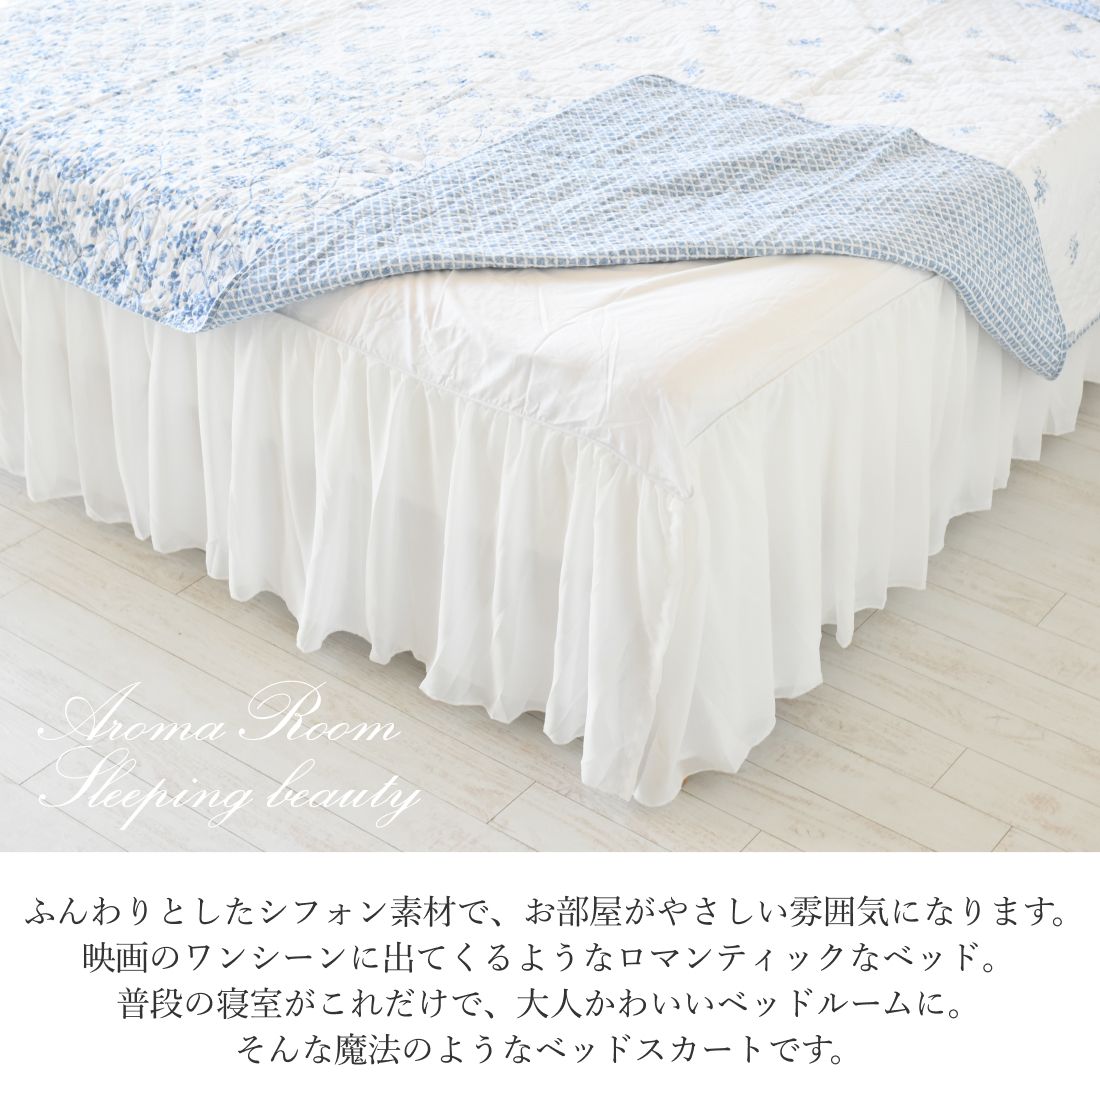 ベッドスカート シフォン ベットスカート セミダブル 日本サイズ仕様 ベッド スカート ベッドカバー かわいい おしゃれ べットカバー ベッドシーツ フリル 寝室 ベッドリネン 北欧 布団カバー